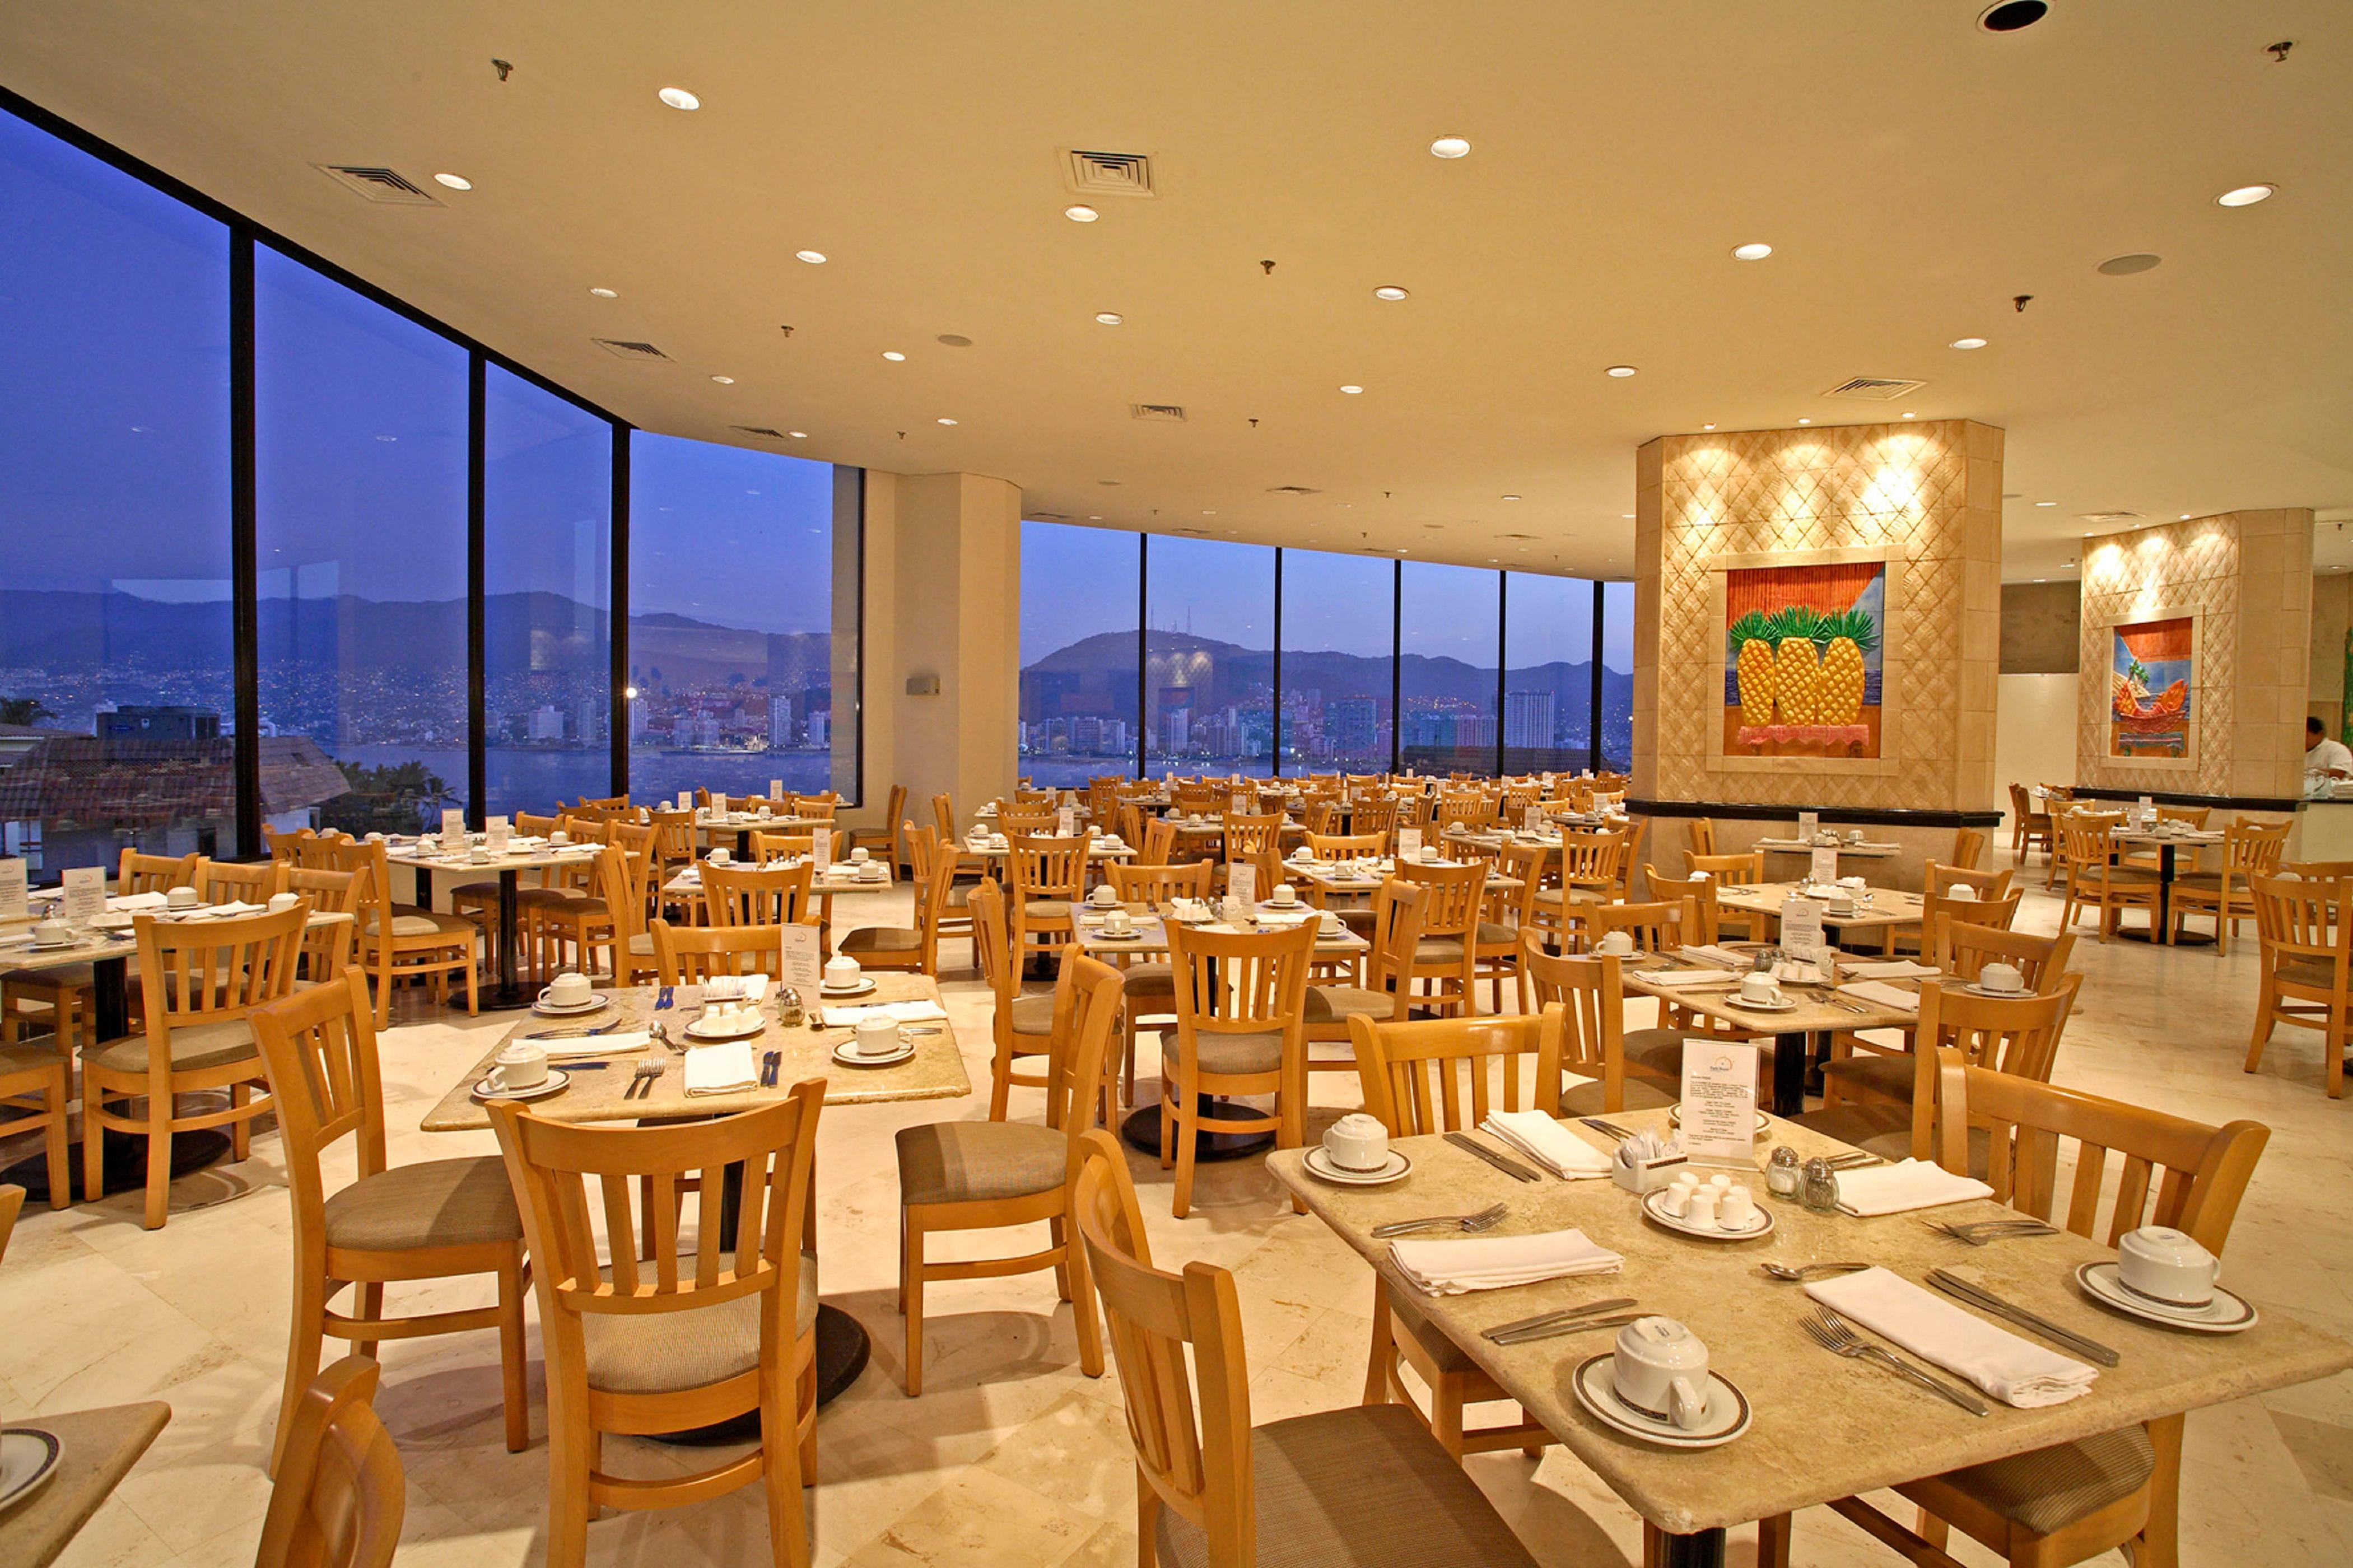 Park Royal Beach Acapulco Restaurante foto